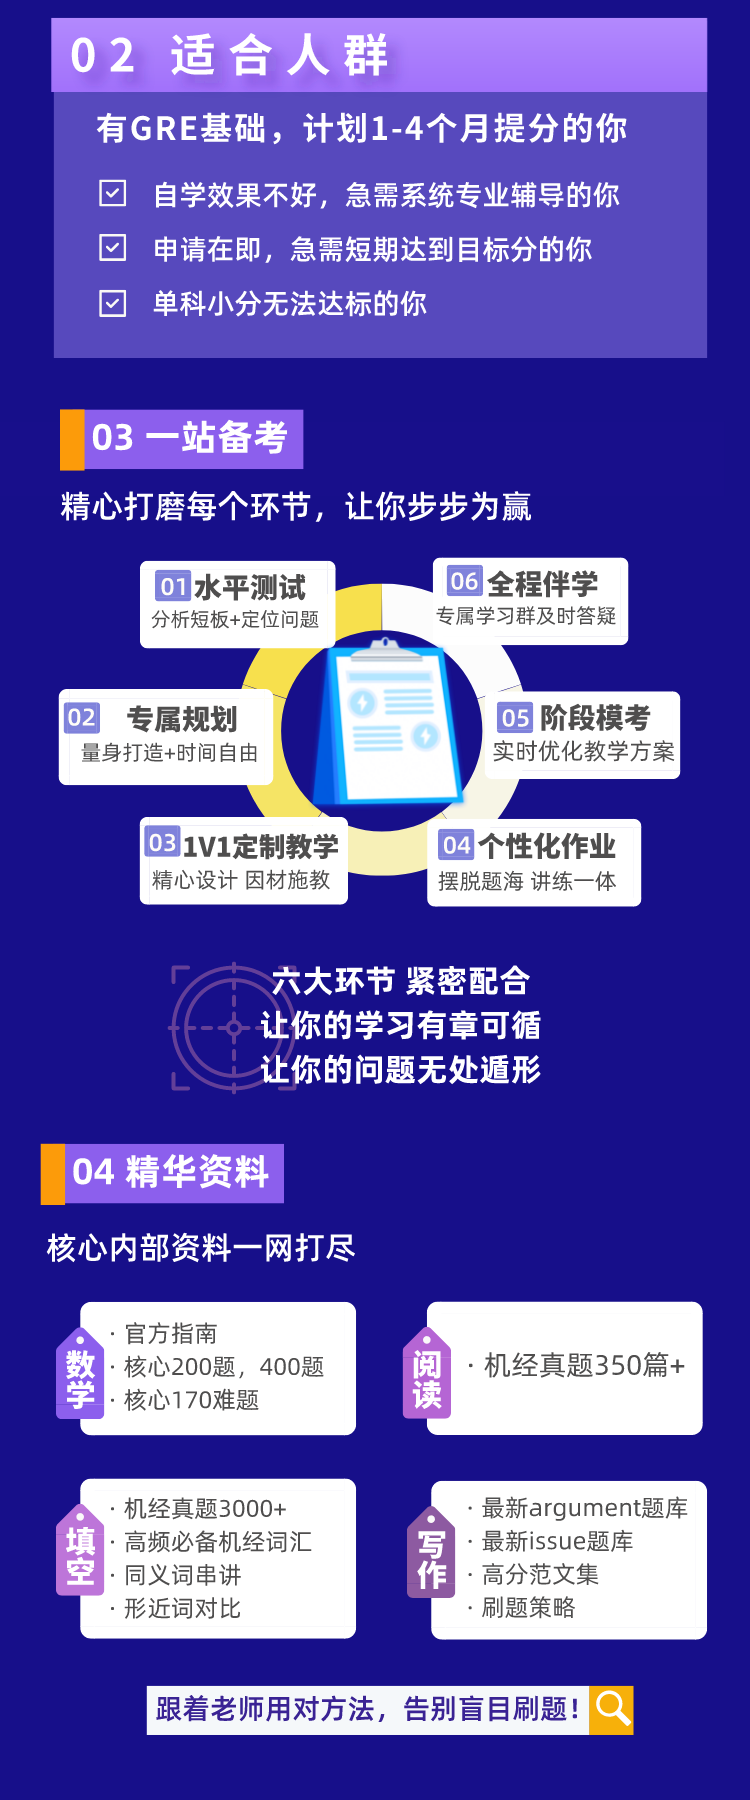 https://simg01.gaodunwangxiao.com/uploadfiles/product-center/202210/25/c69b9_20221025132358.png